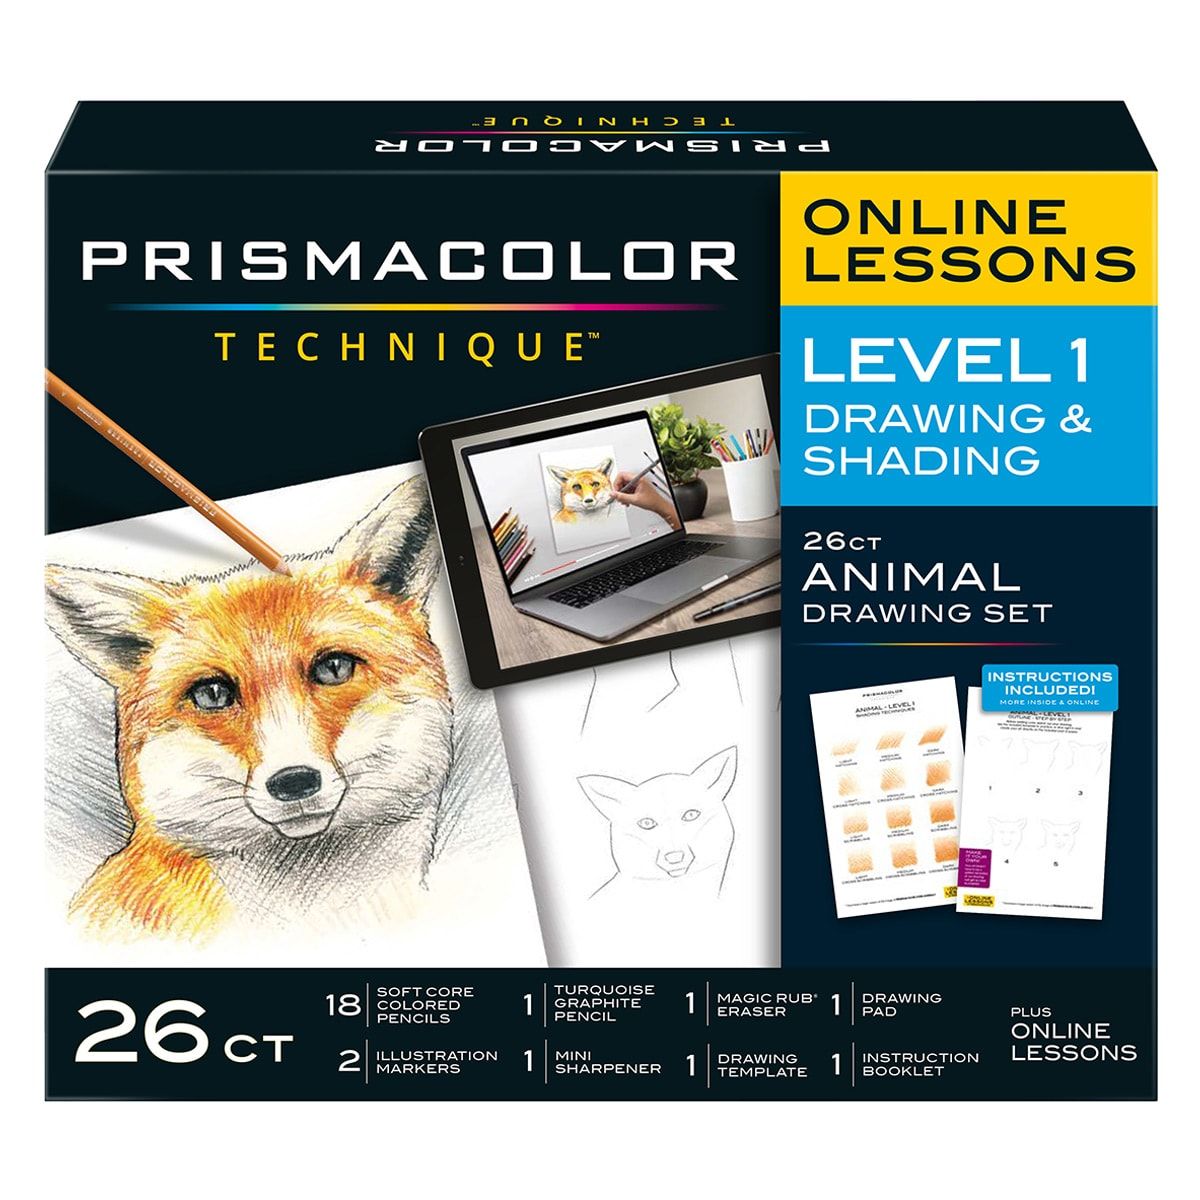 https://www.jerrysartarama.com/media/catalog/product/cache/ecb49a32eeb5603594b082bd5fe65733/a/n/animal-lvl1-prisamcolor-colored-pencils-technique-kits-ls-v39395.jpg